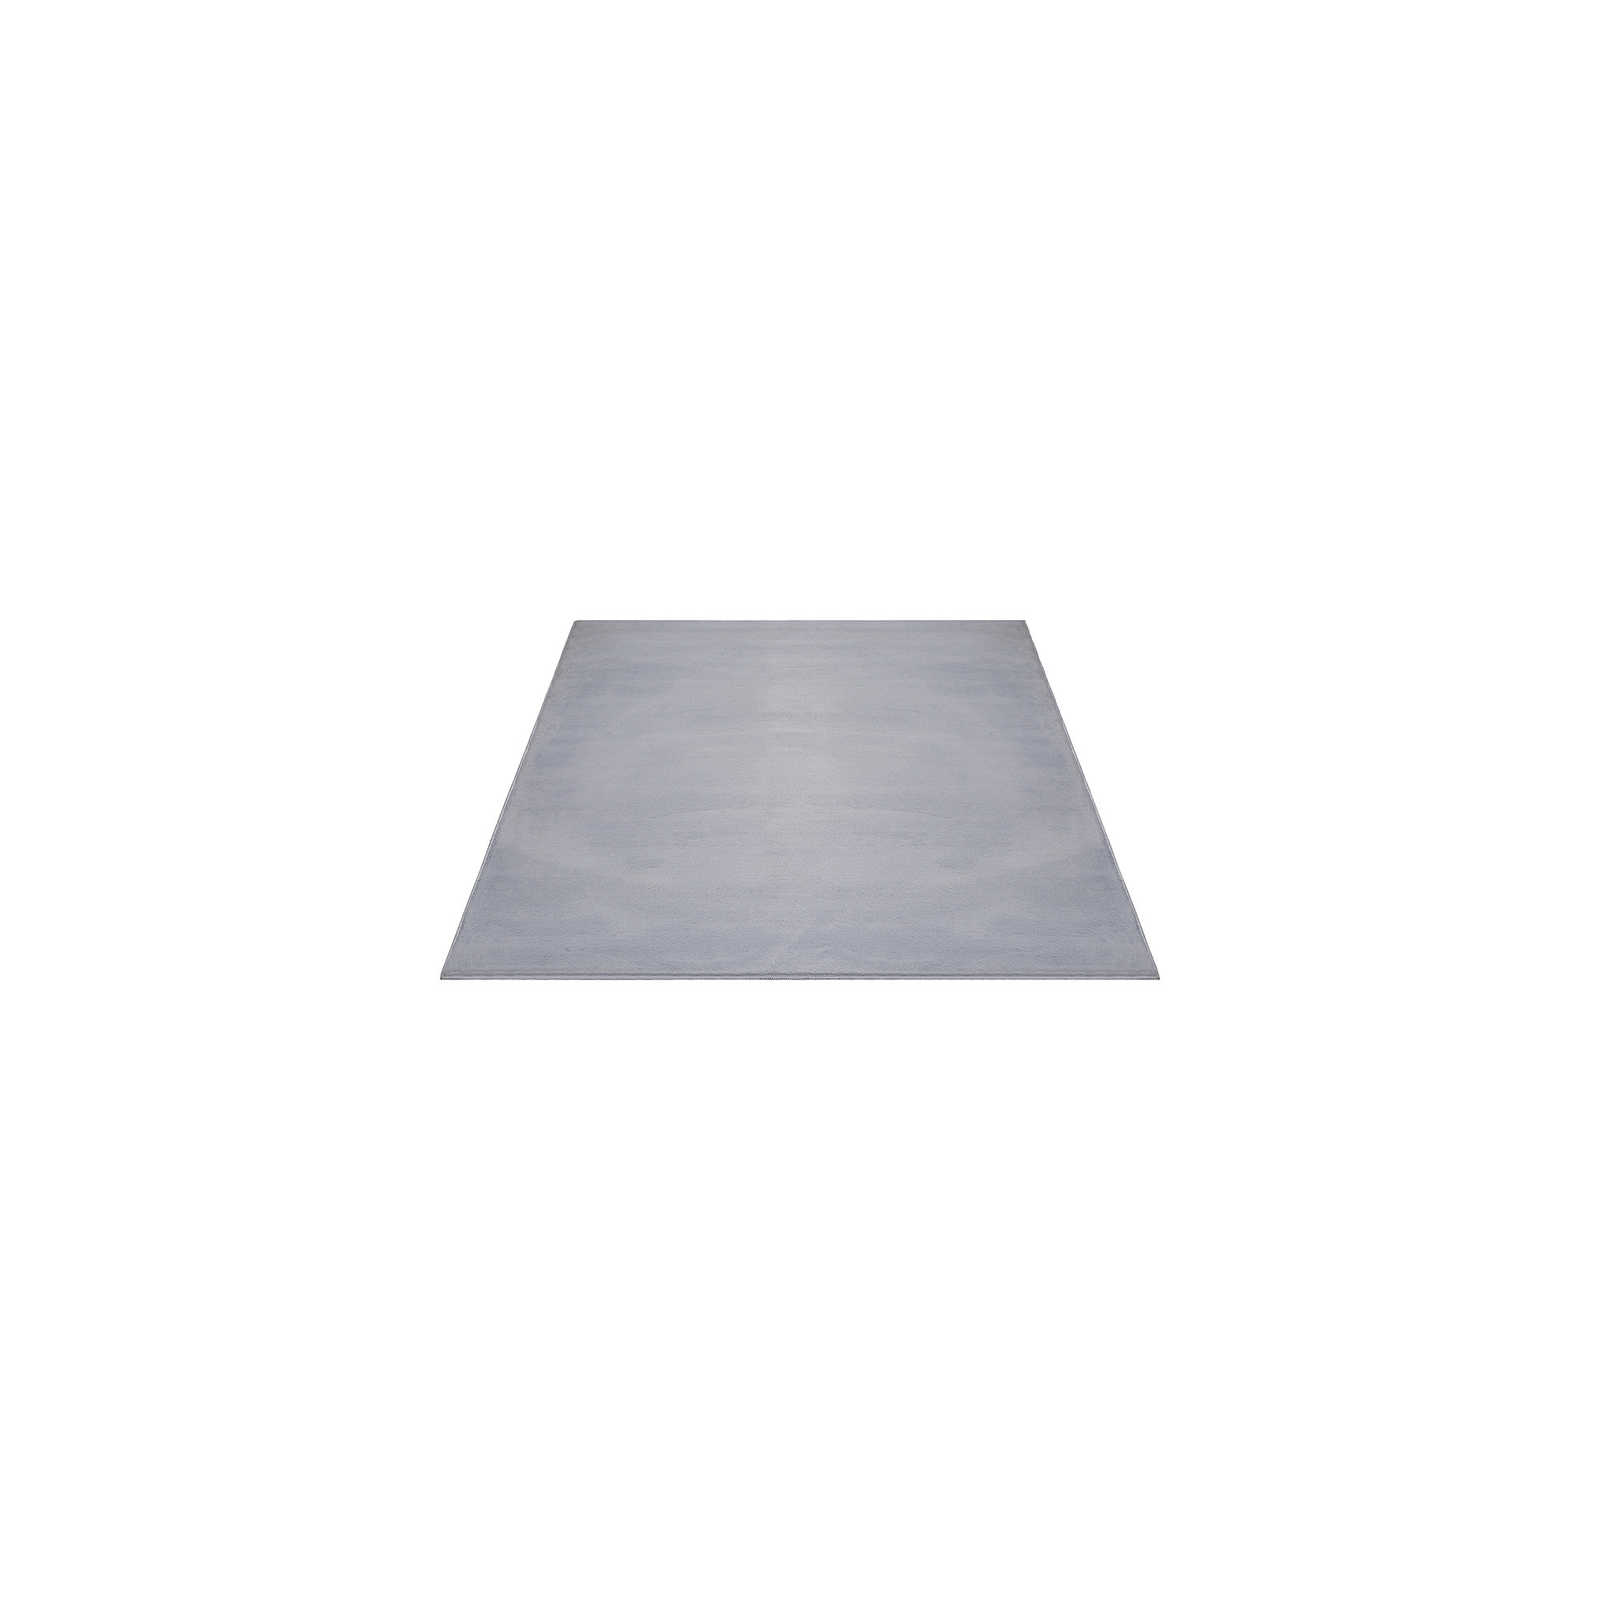 Angenehmer Hochflor Teppich in sanften Grau – 160 x 117 cm
